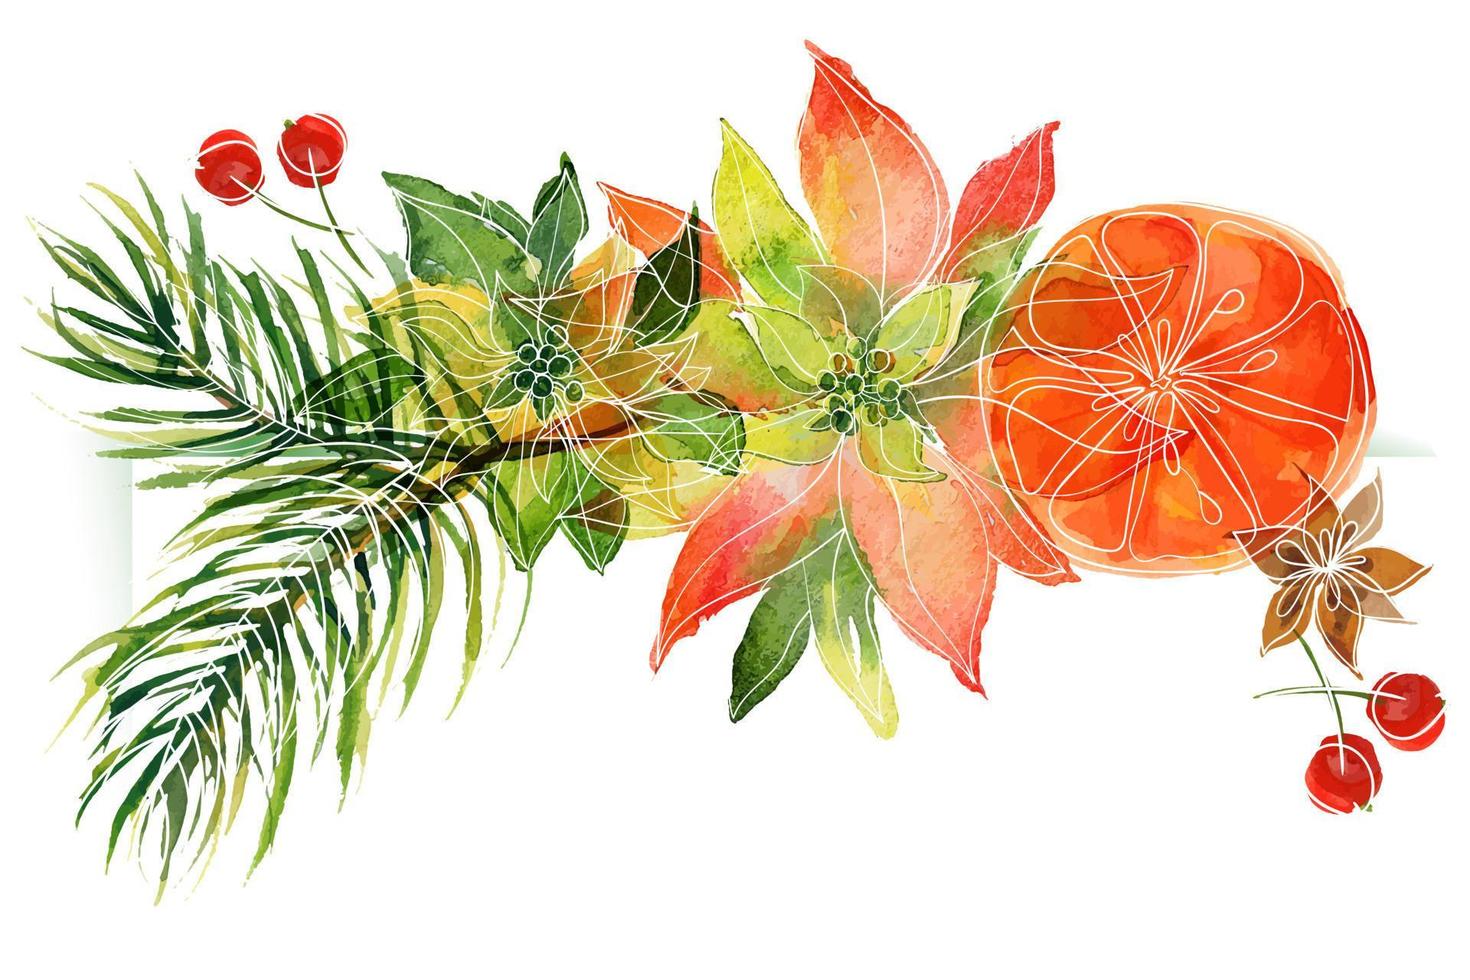 vignette florale de noël avec des oranges et des branches de poinsettia et de pin. vignette décorative pour de jolies salutations et invitations de noël et du nouvel an vecteur